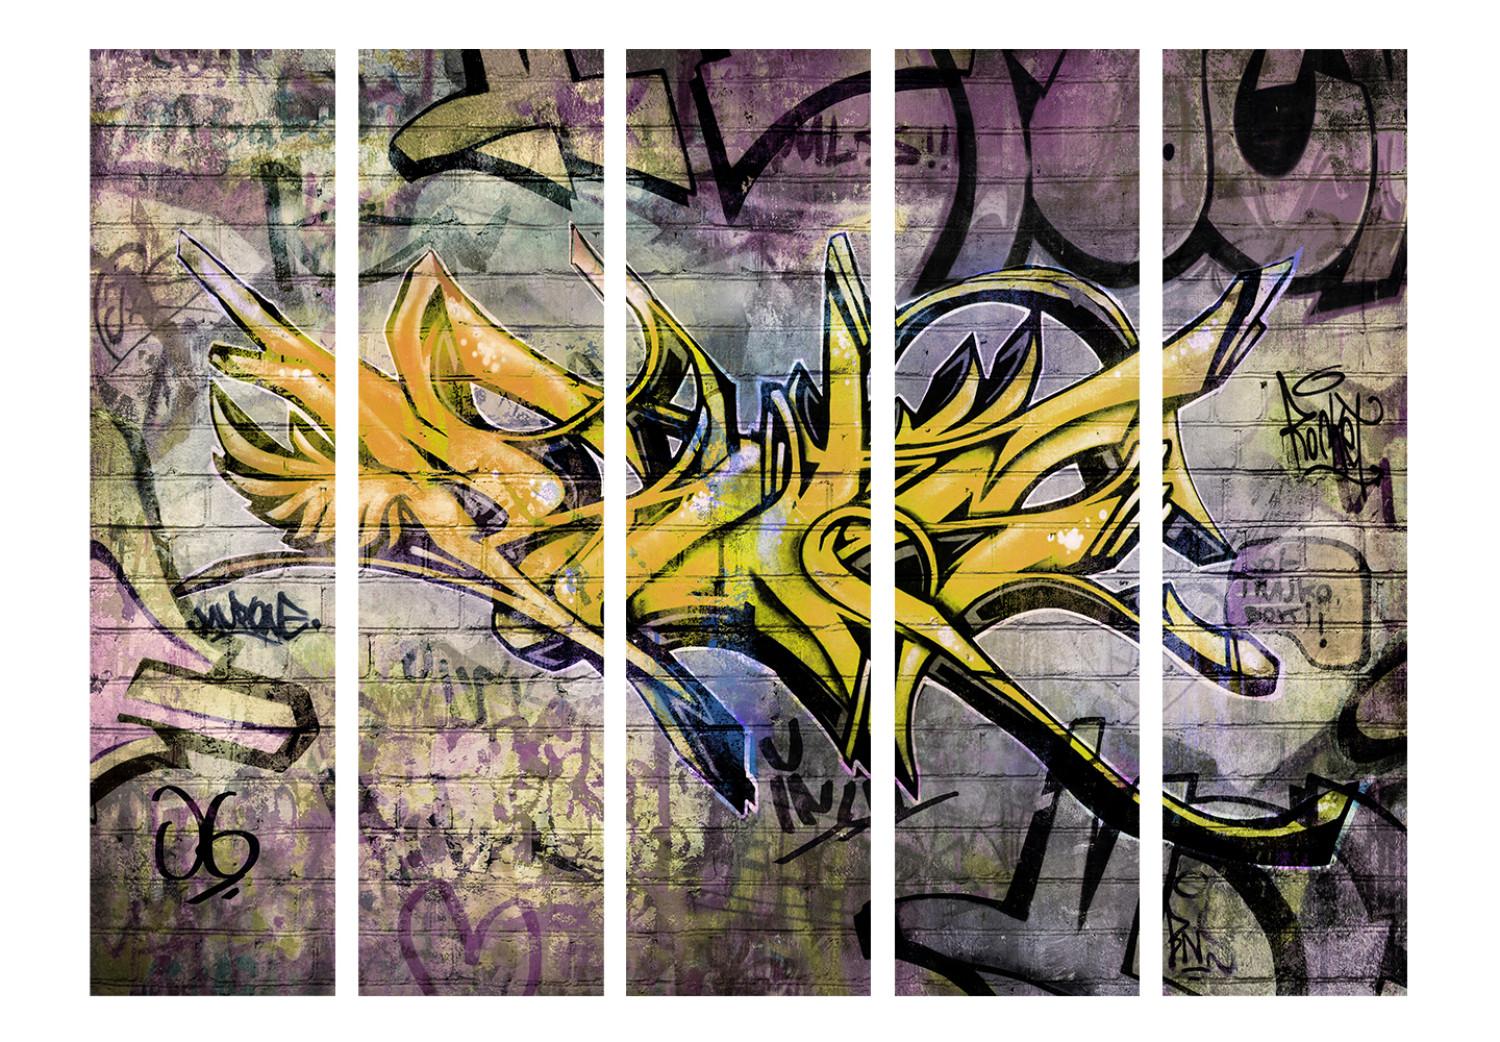 Biombo barato Graffiti Stupendo II (5 partes) - abstracción urbana con escritos